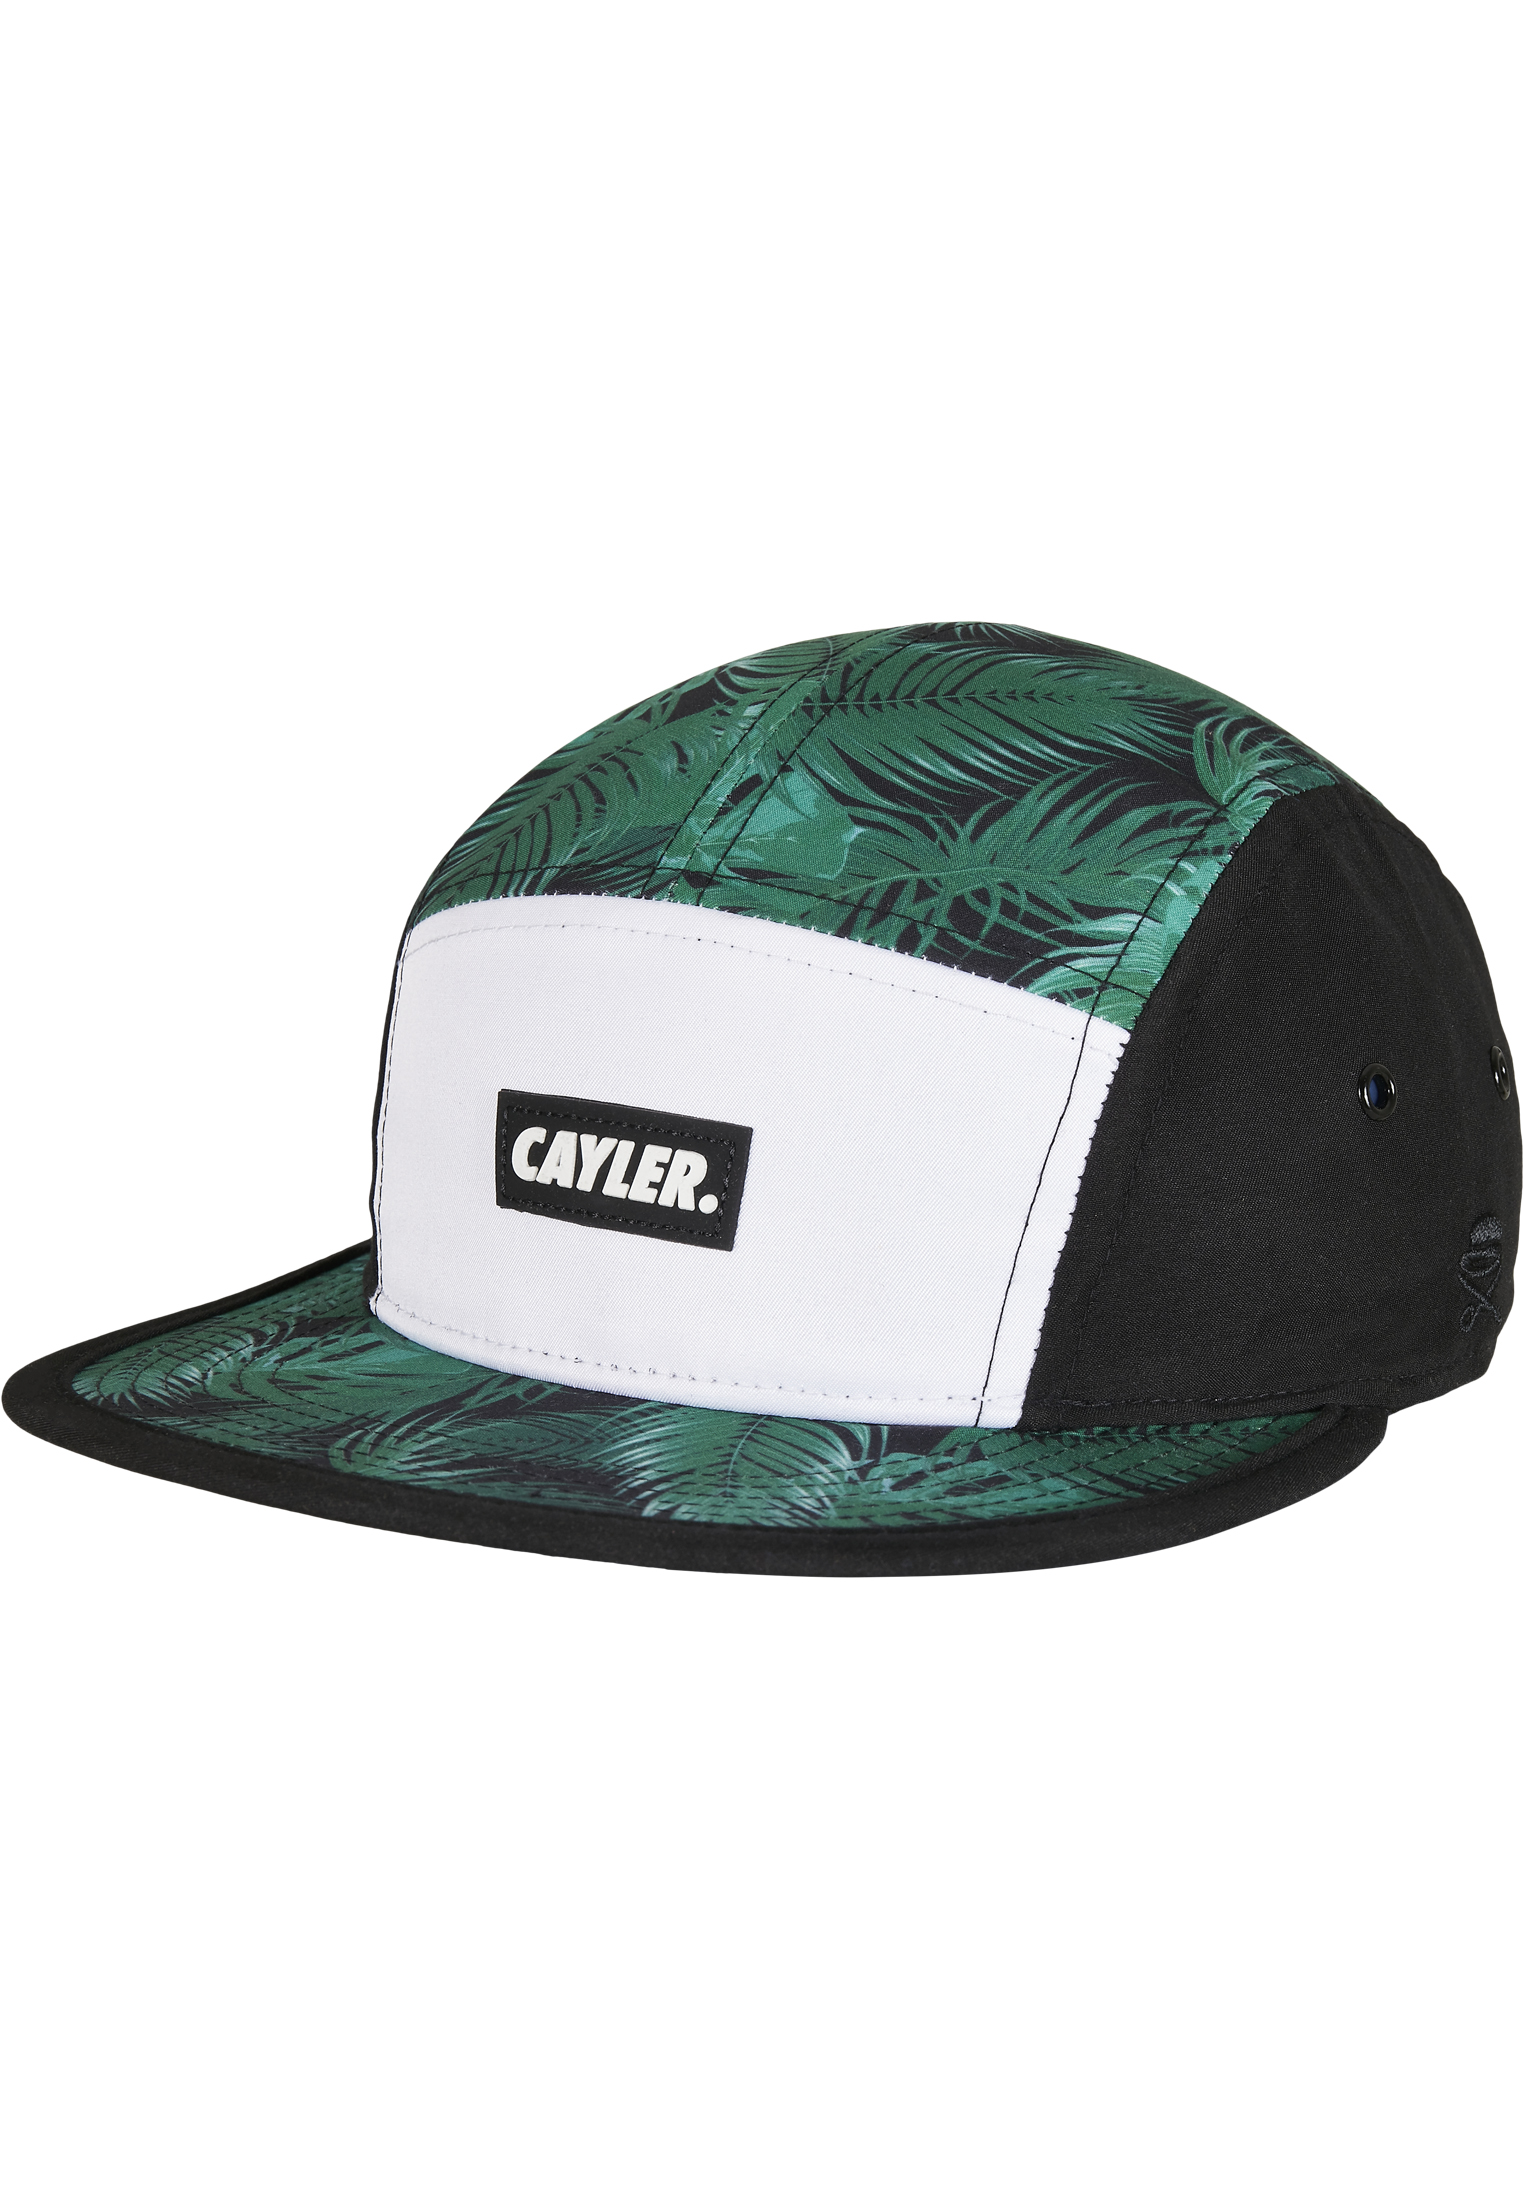 Caps C&S WL Green Jungle Camp Cap in Farbe black/mc